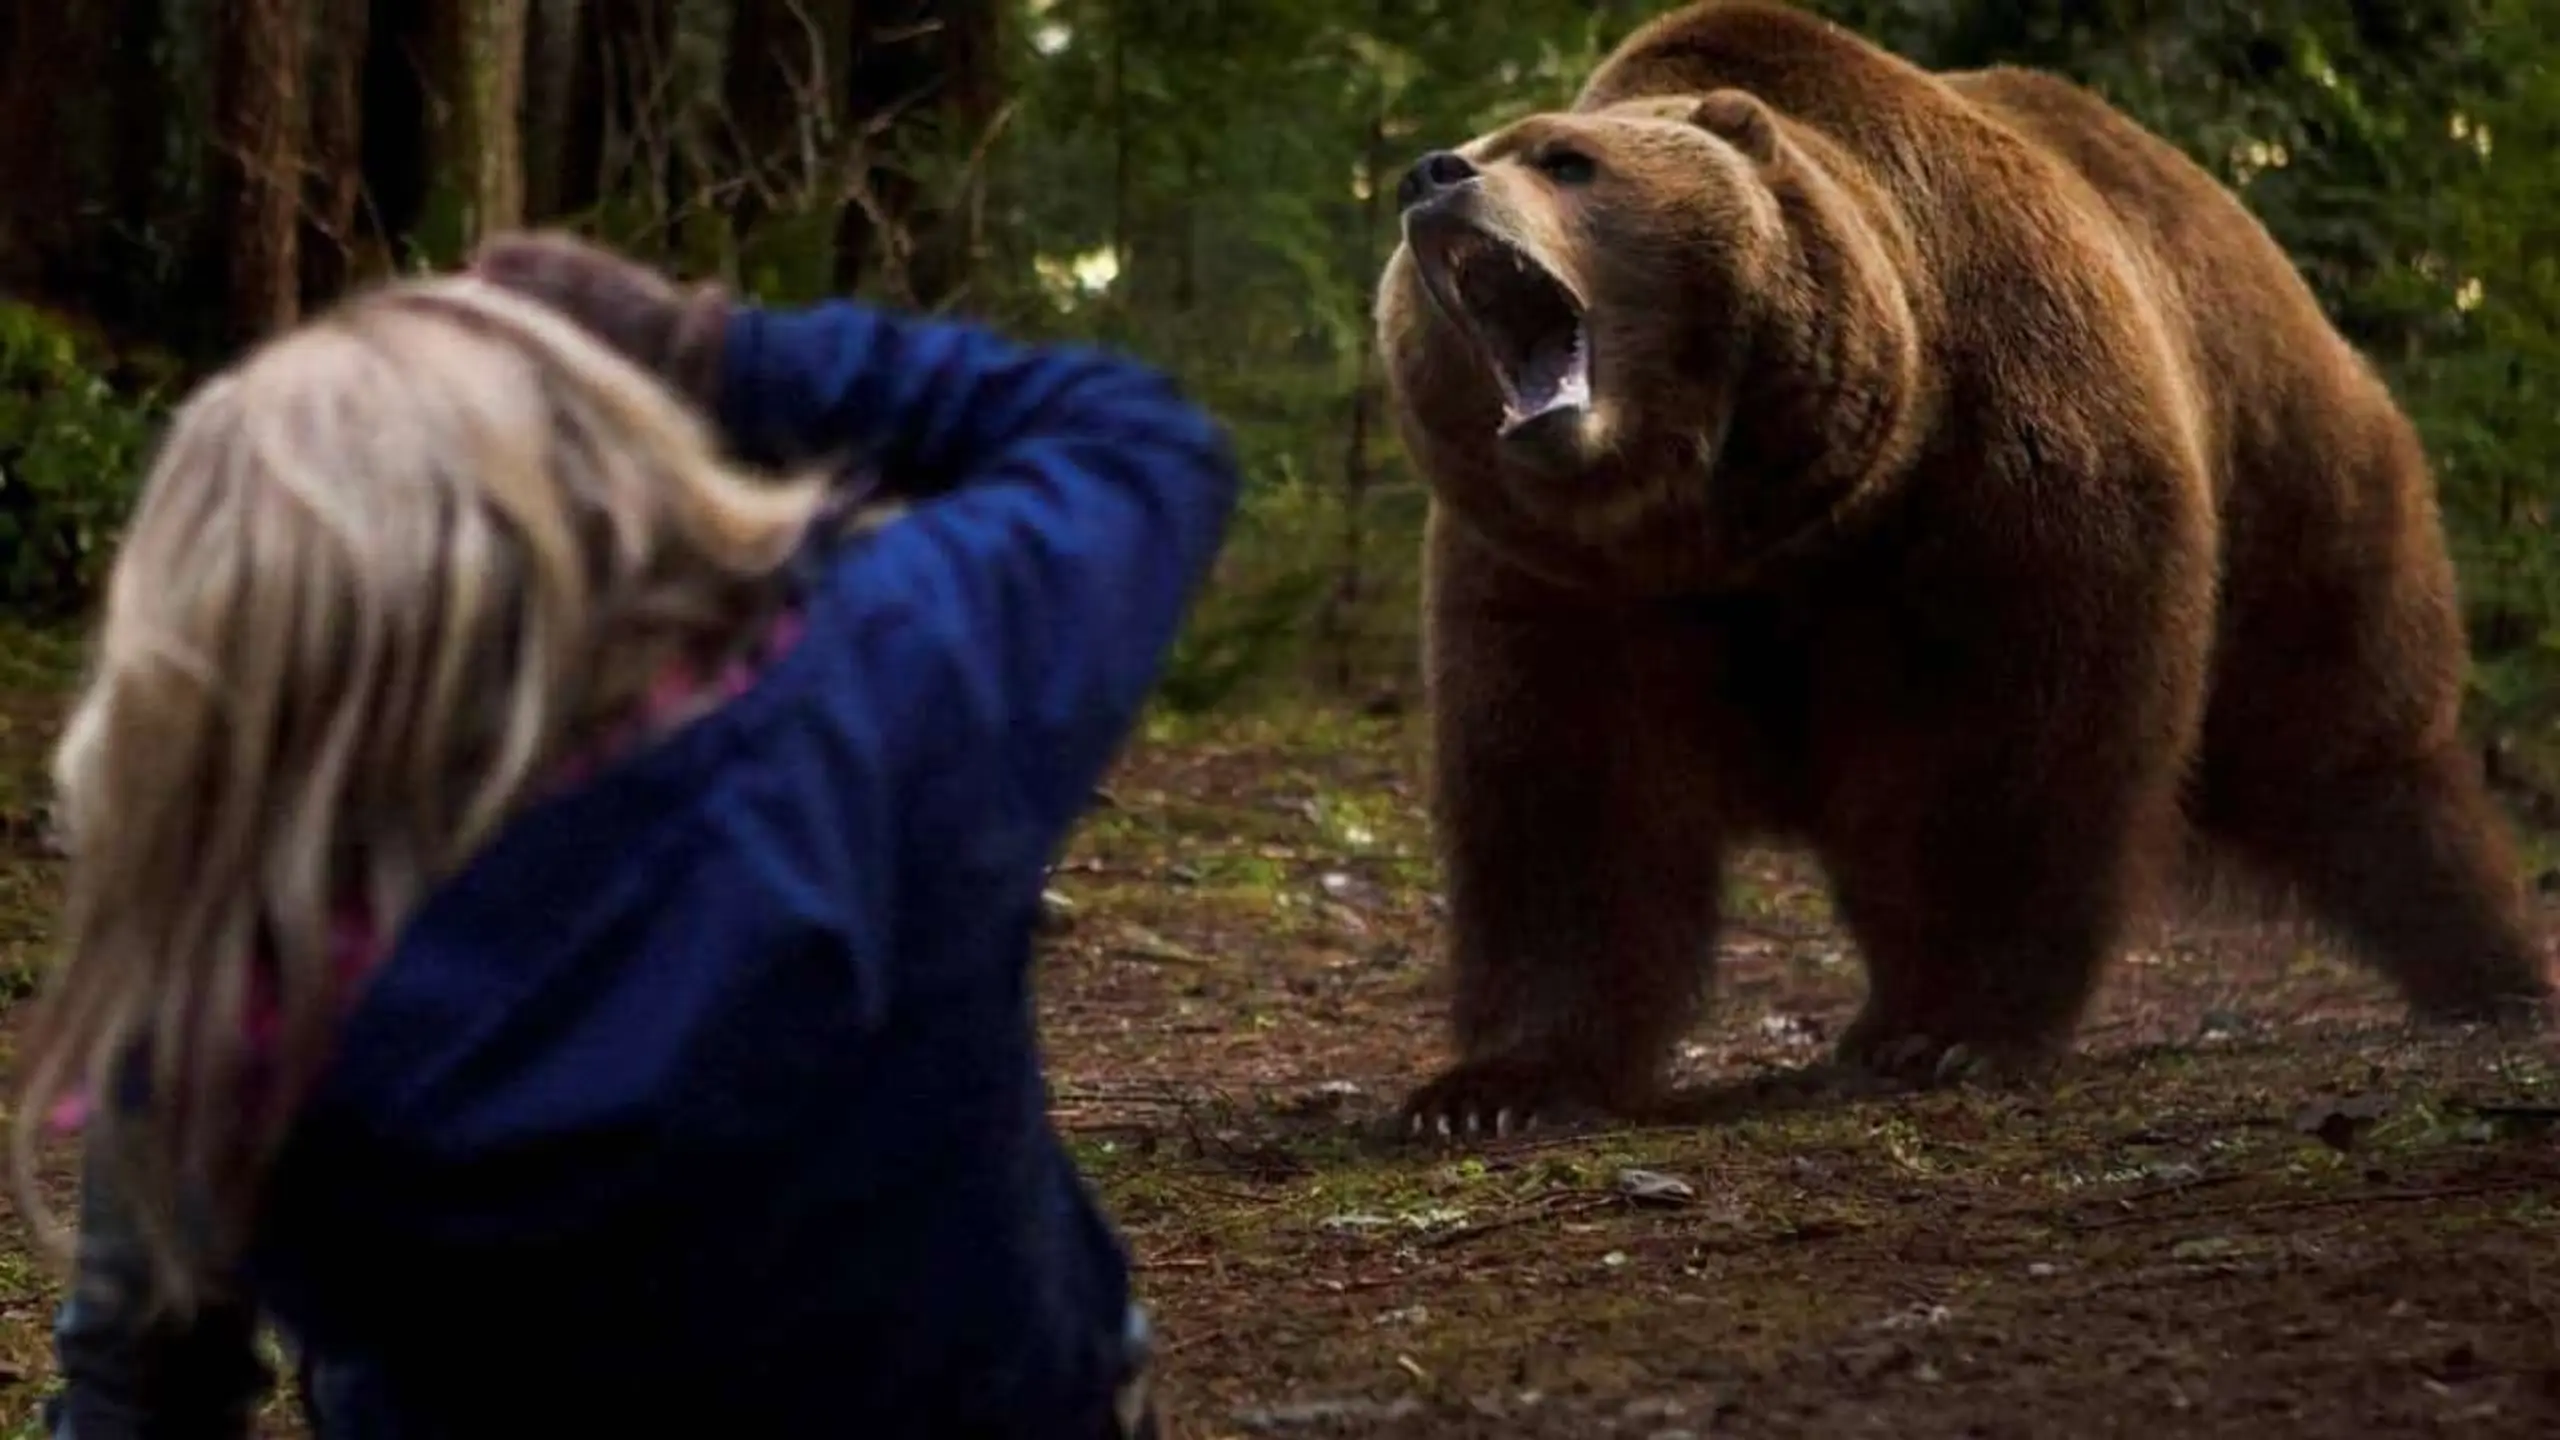 Grizzly Rage - Die Rache der Bärenmutter